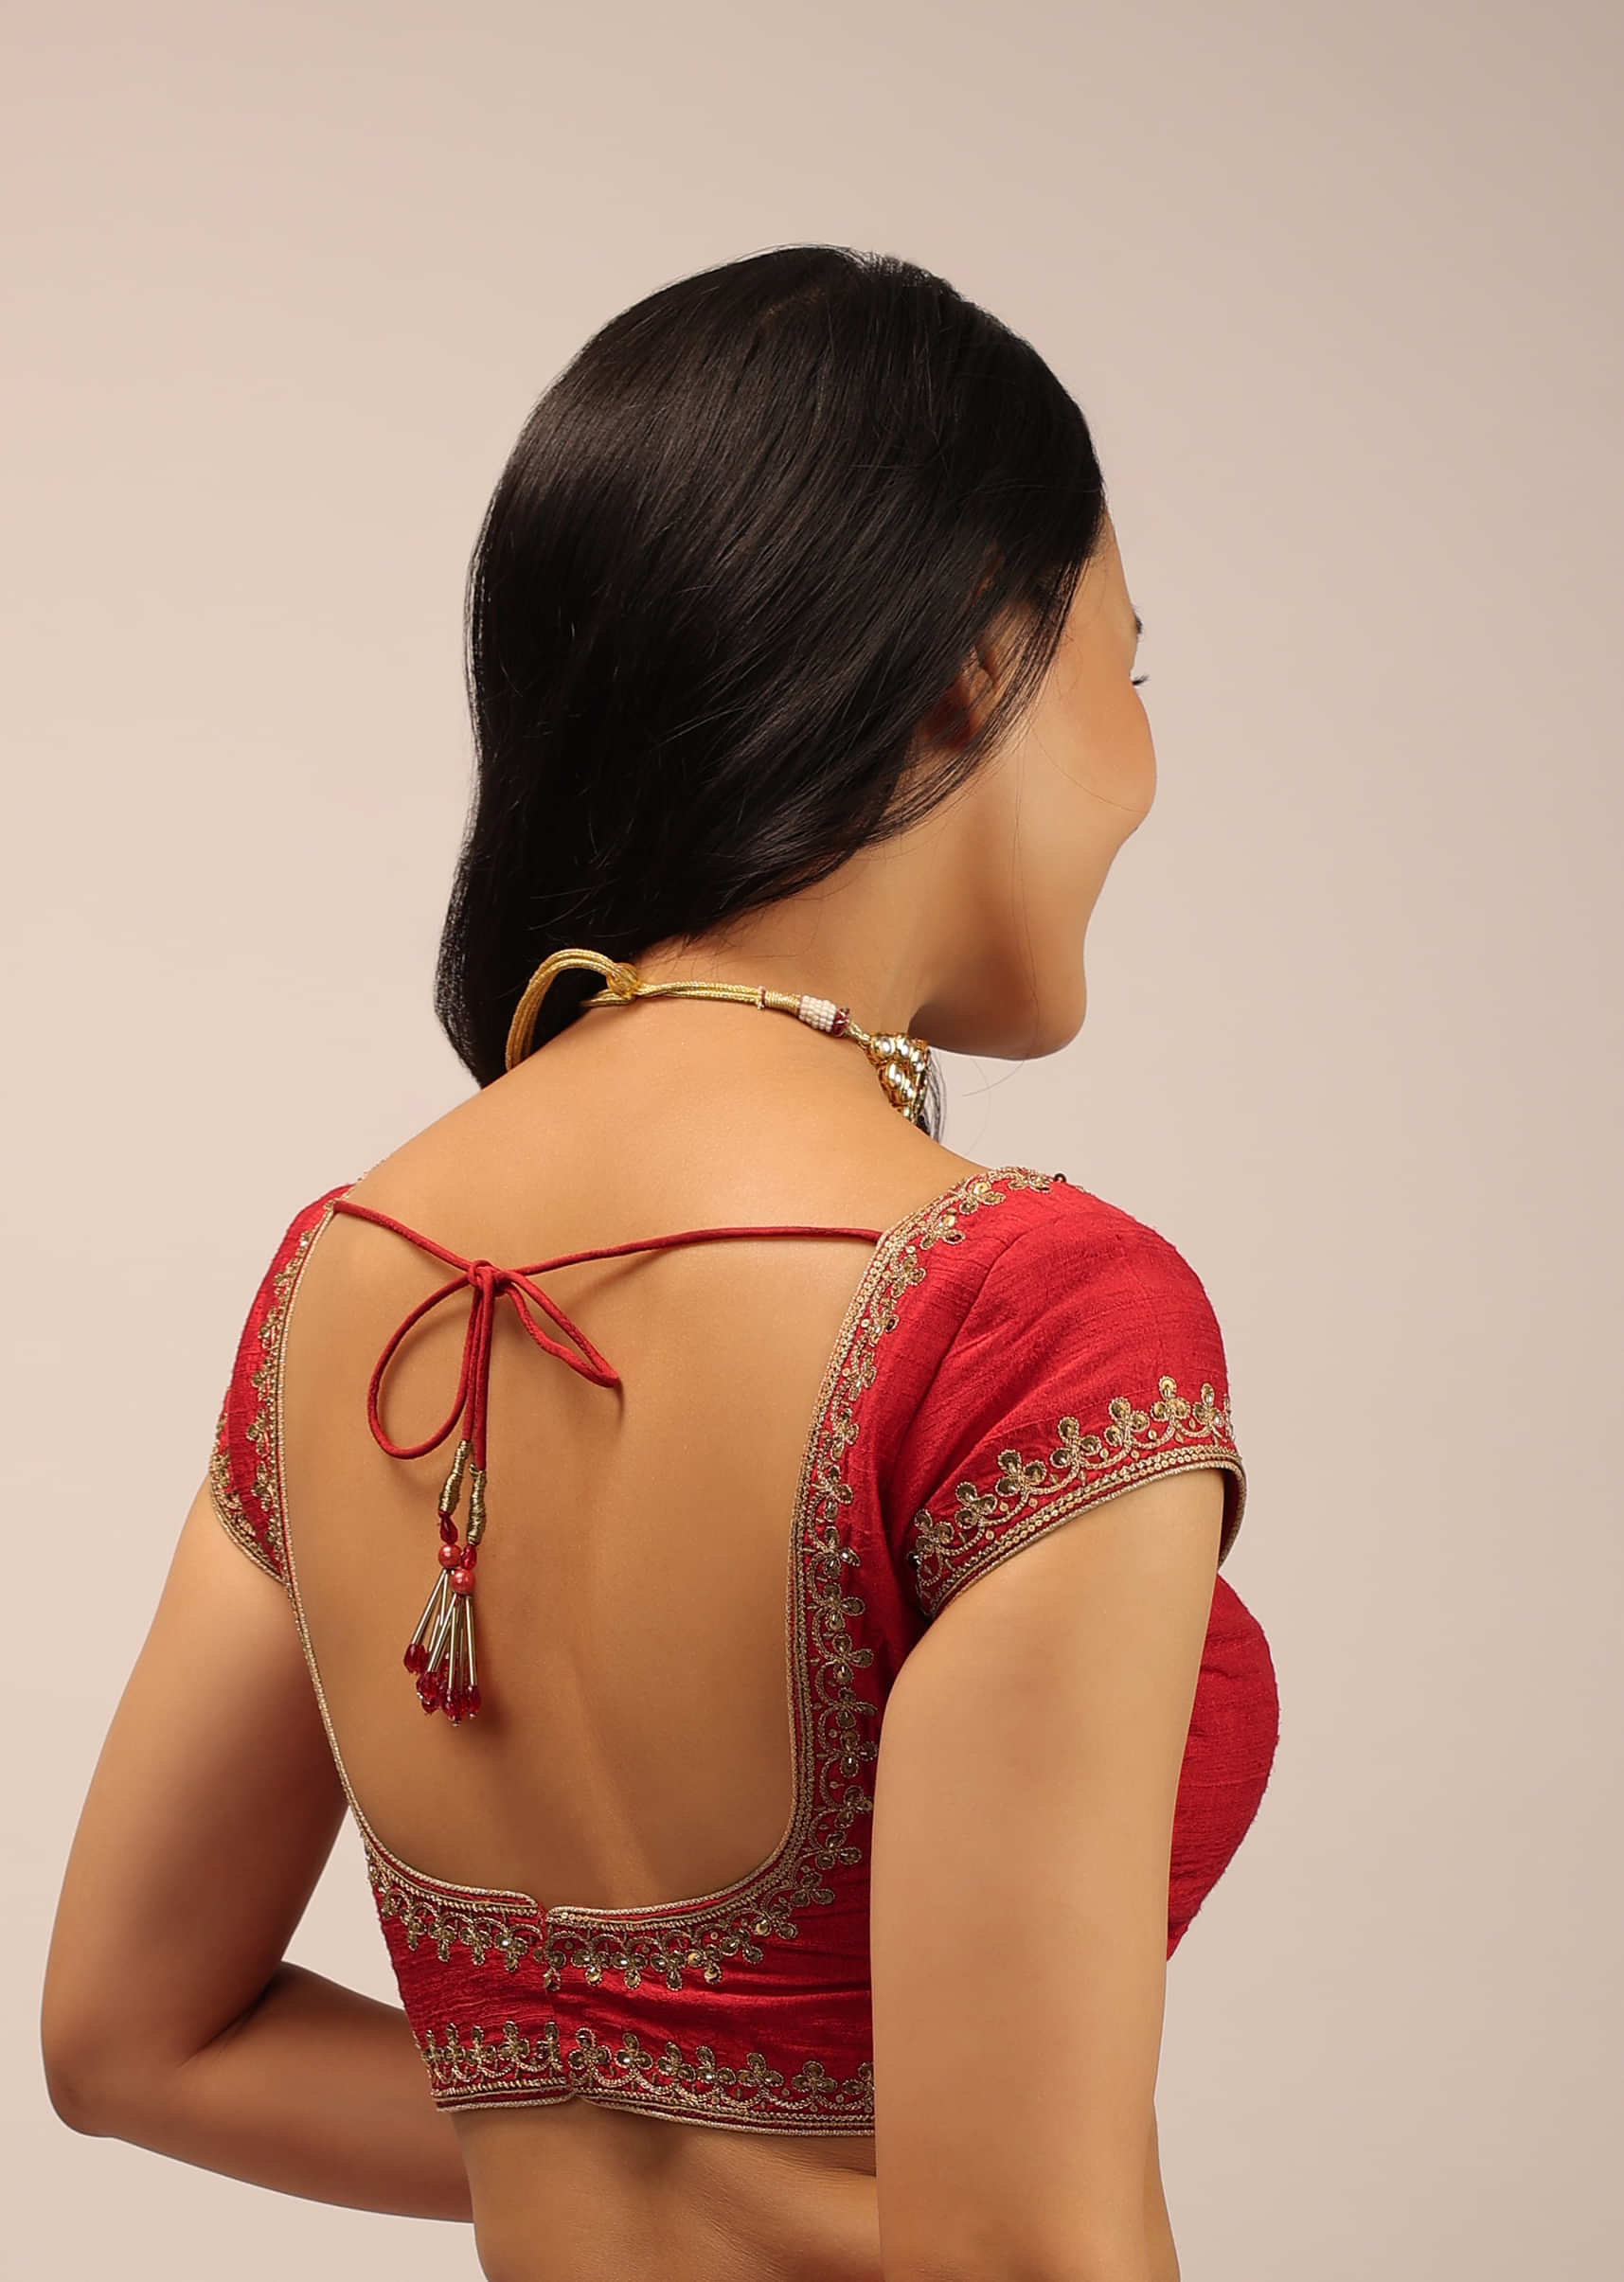 Red Blouse In Raw Silk With Cap Sleeves, Round Neckline And Zardosi Detailed Neckline